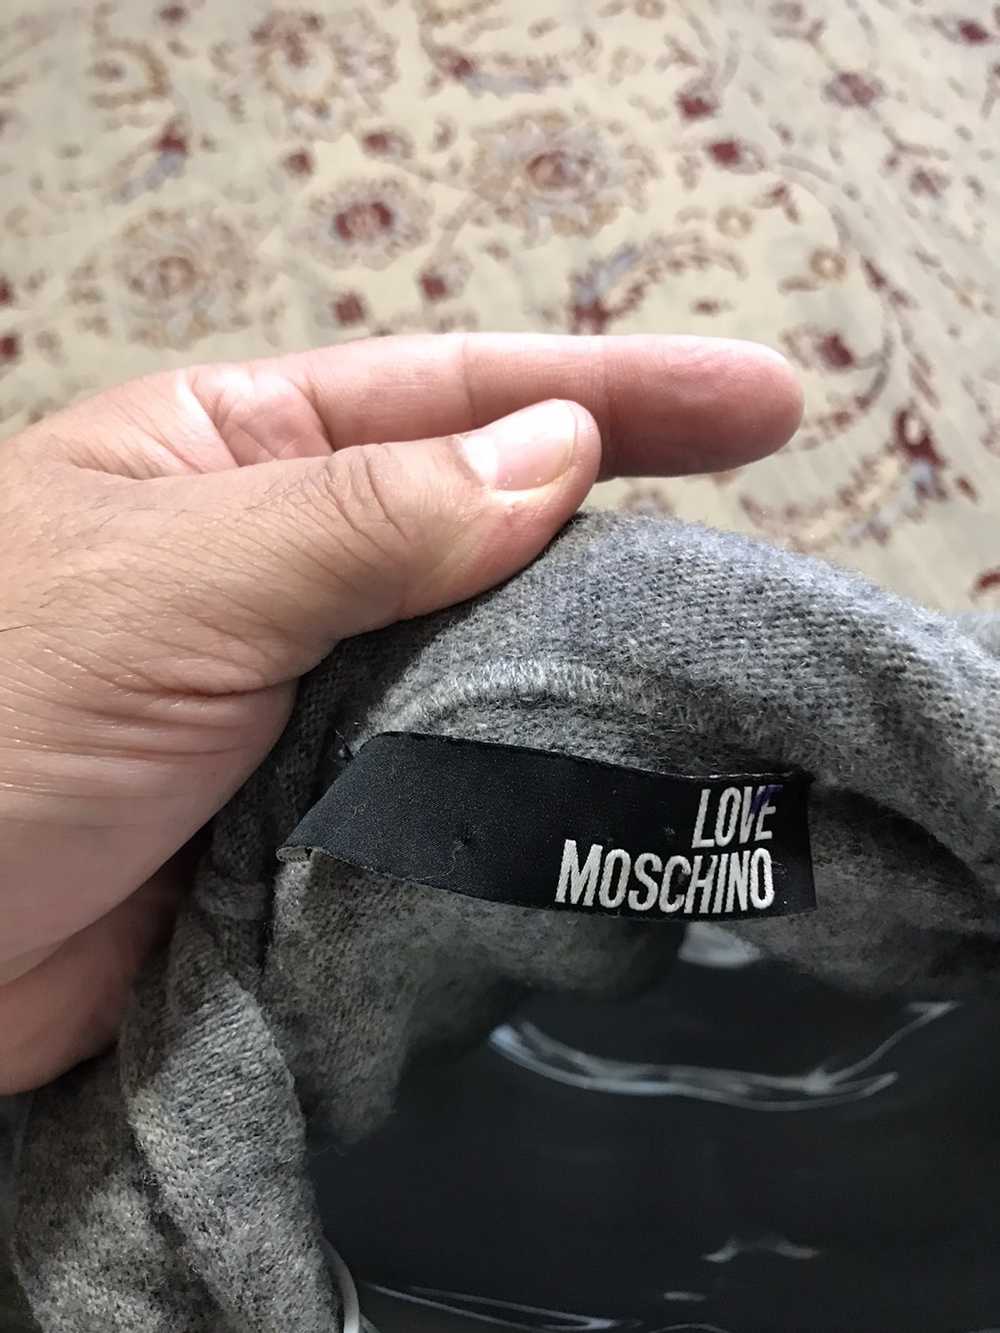 Moschino Love Moschino Hoodie sweater Wool blend - image 8